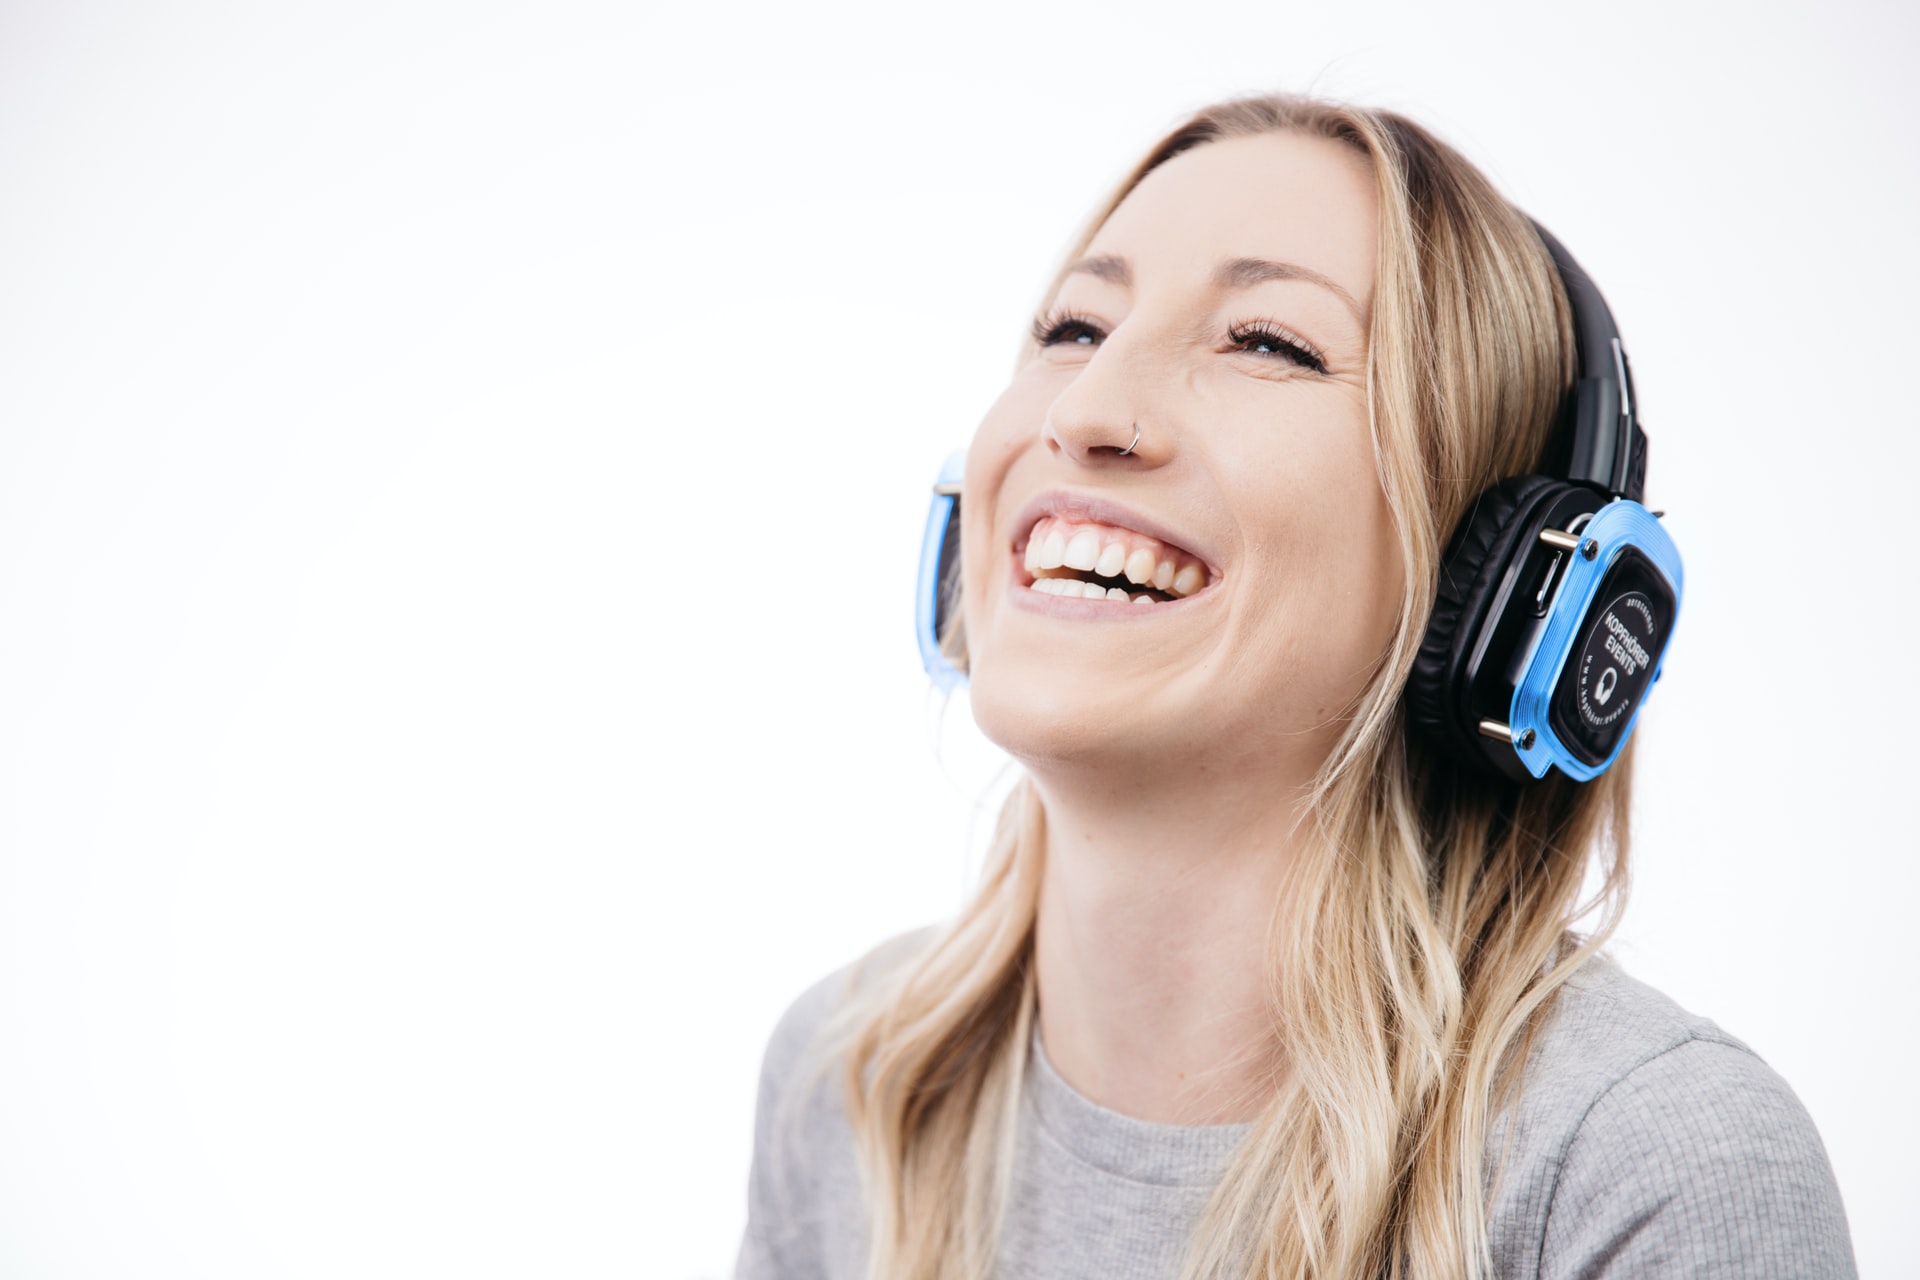 A smiling woman listens to binaurals through headphones.